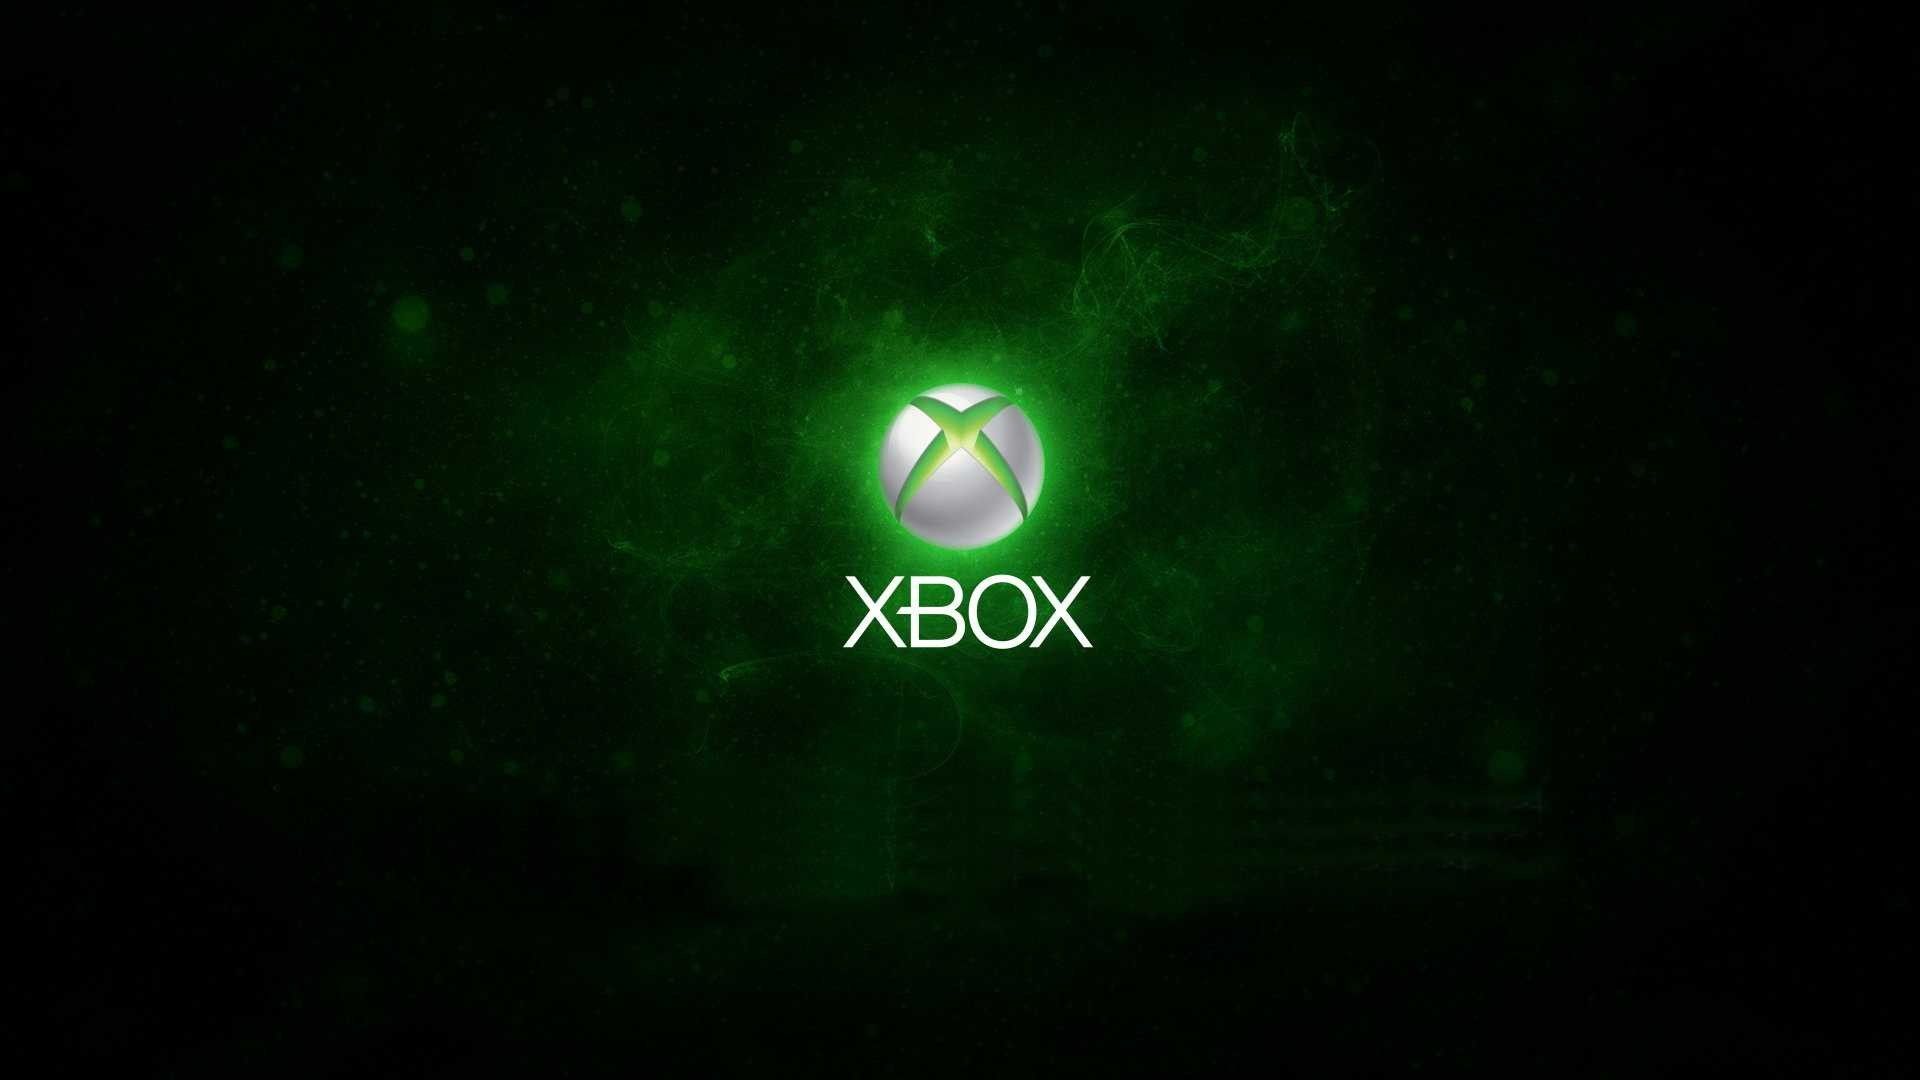 Là một game thủ trung thành của Xbox, bạn không thể bỏ qua bộ sưu tập Xbox Wallpapers cực đẹp và độc đáo này. Với nhiều hình nền khác nhau, từ những hình nền cổ điển cho đến những hình nền hiện đại, đảm bảo sẽ làm nổi bật cho trang trí game của bạn. Hãy cùng chiêm ngưỡng những hình ảnh cực chất này nhé!